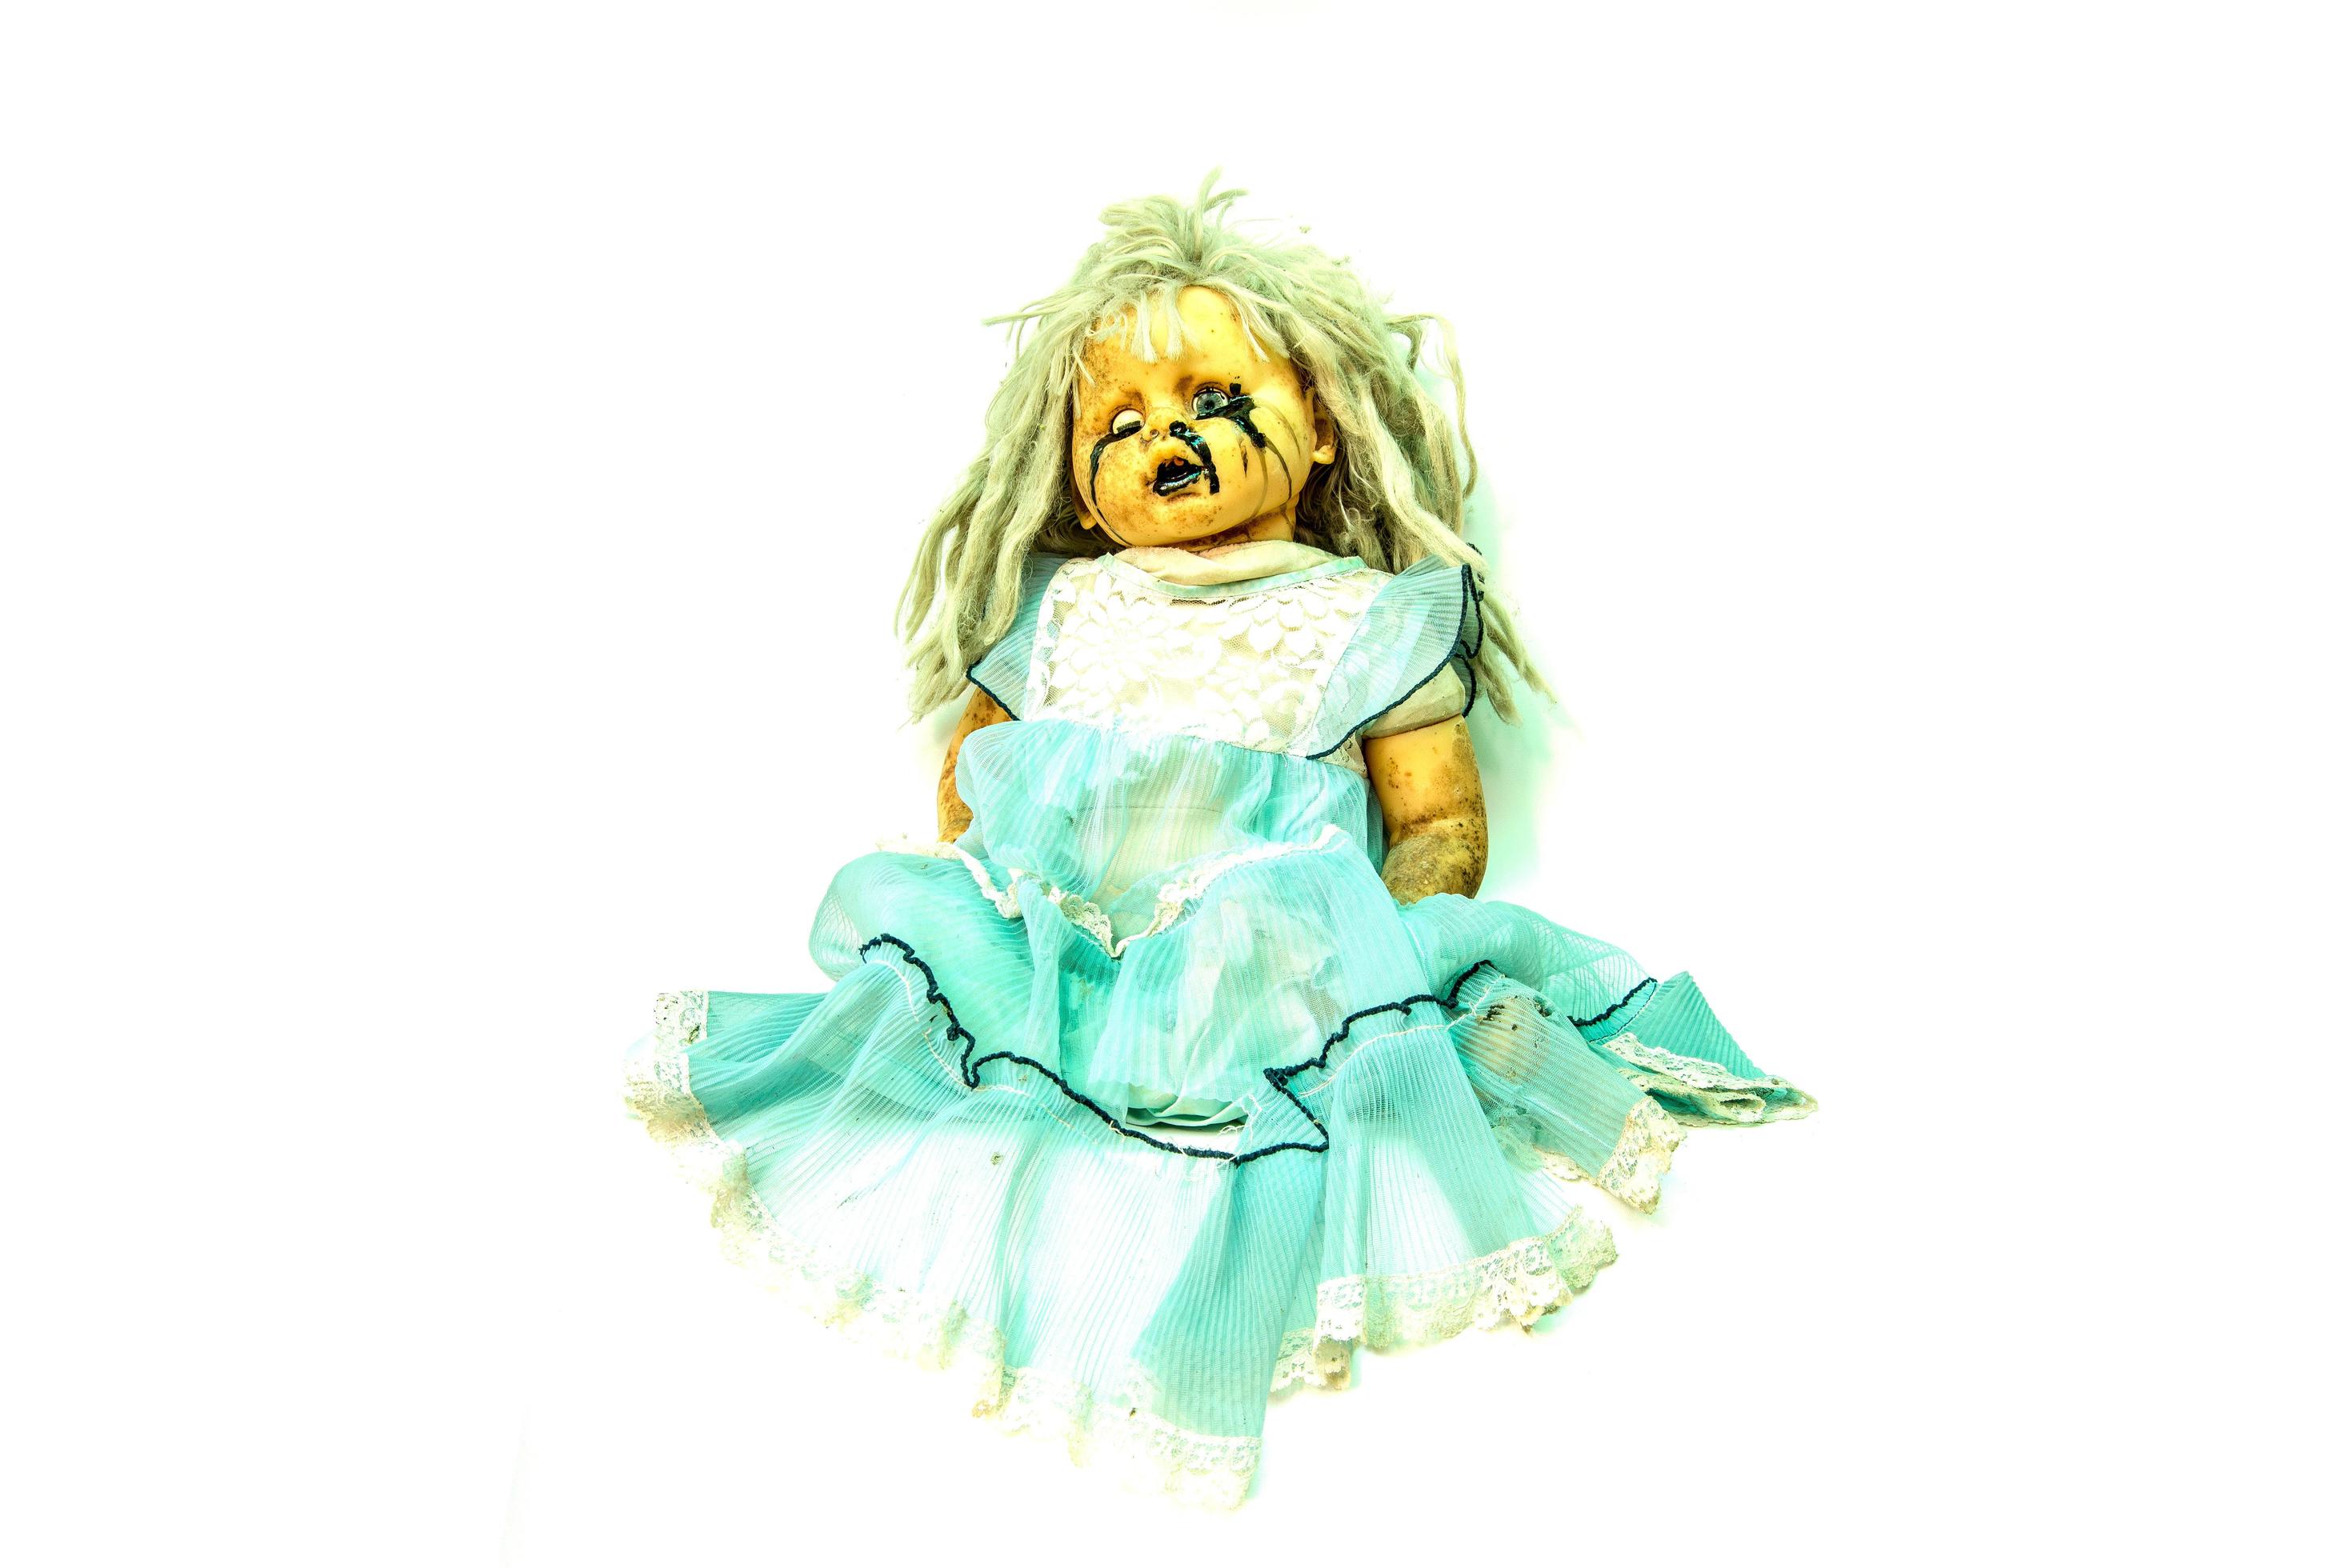 Cara de boneca assustadora Free Stock Photos, Images, and Pictures of Cara  de boneca assustadora